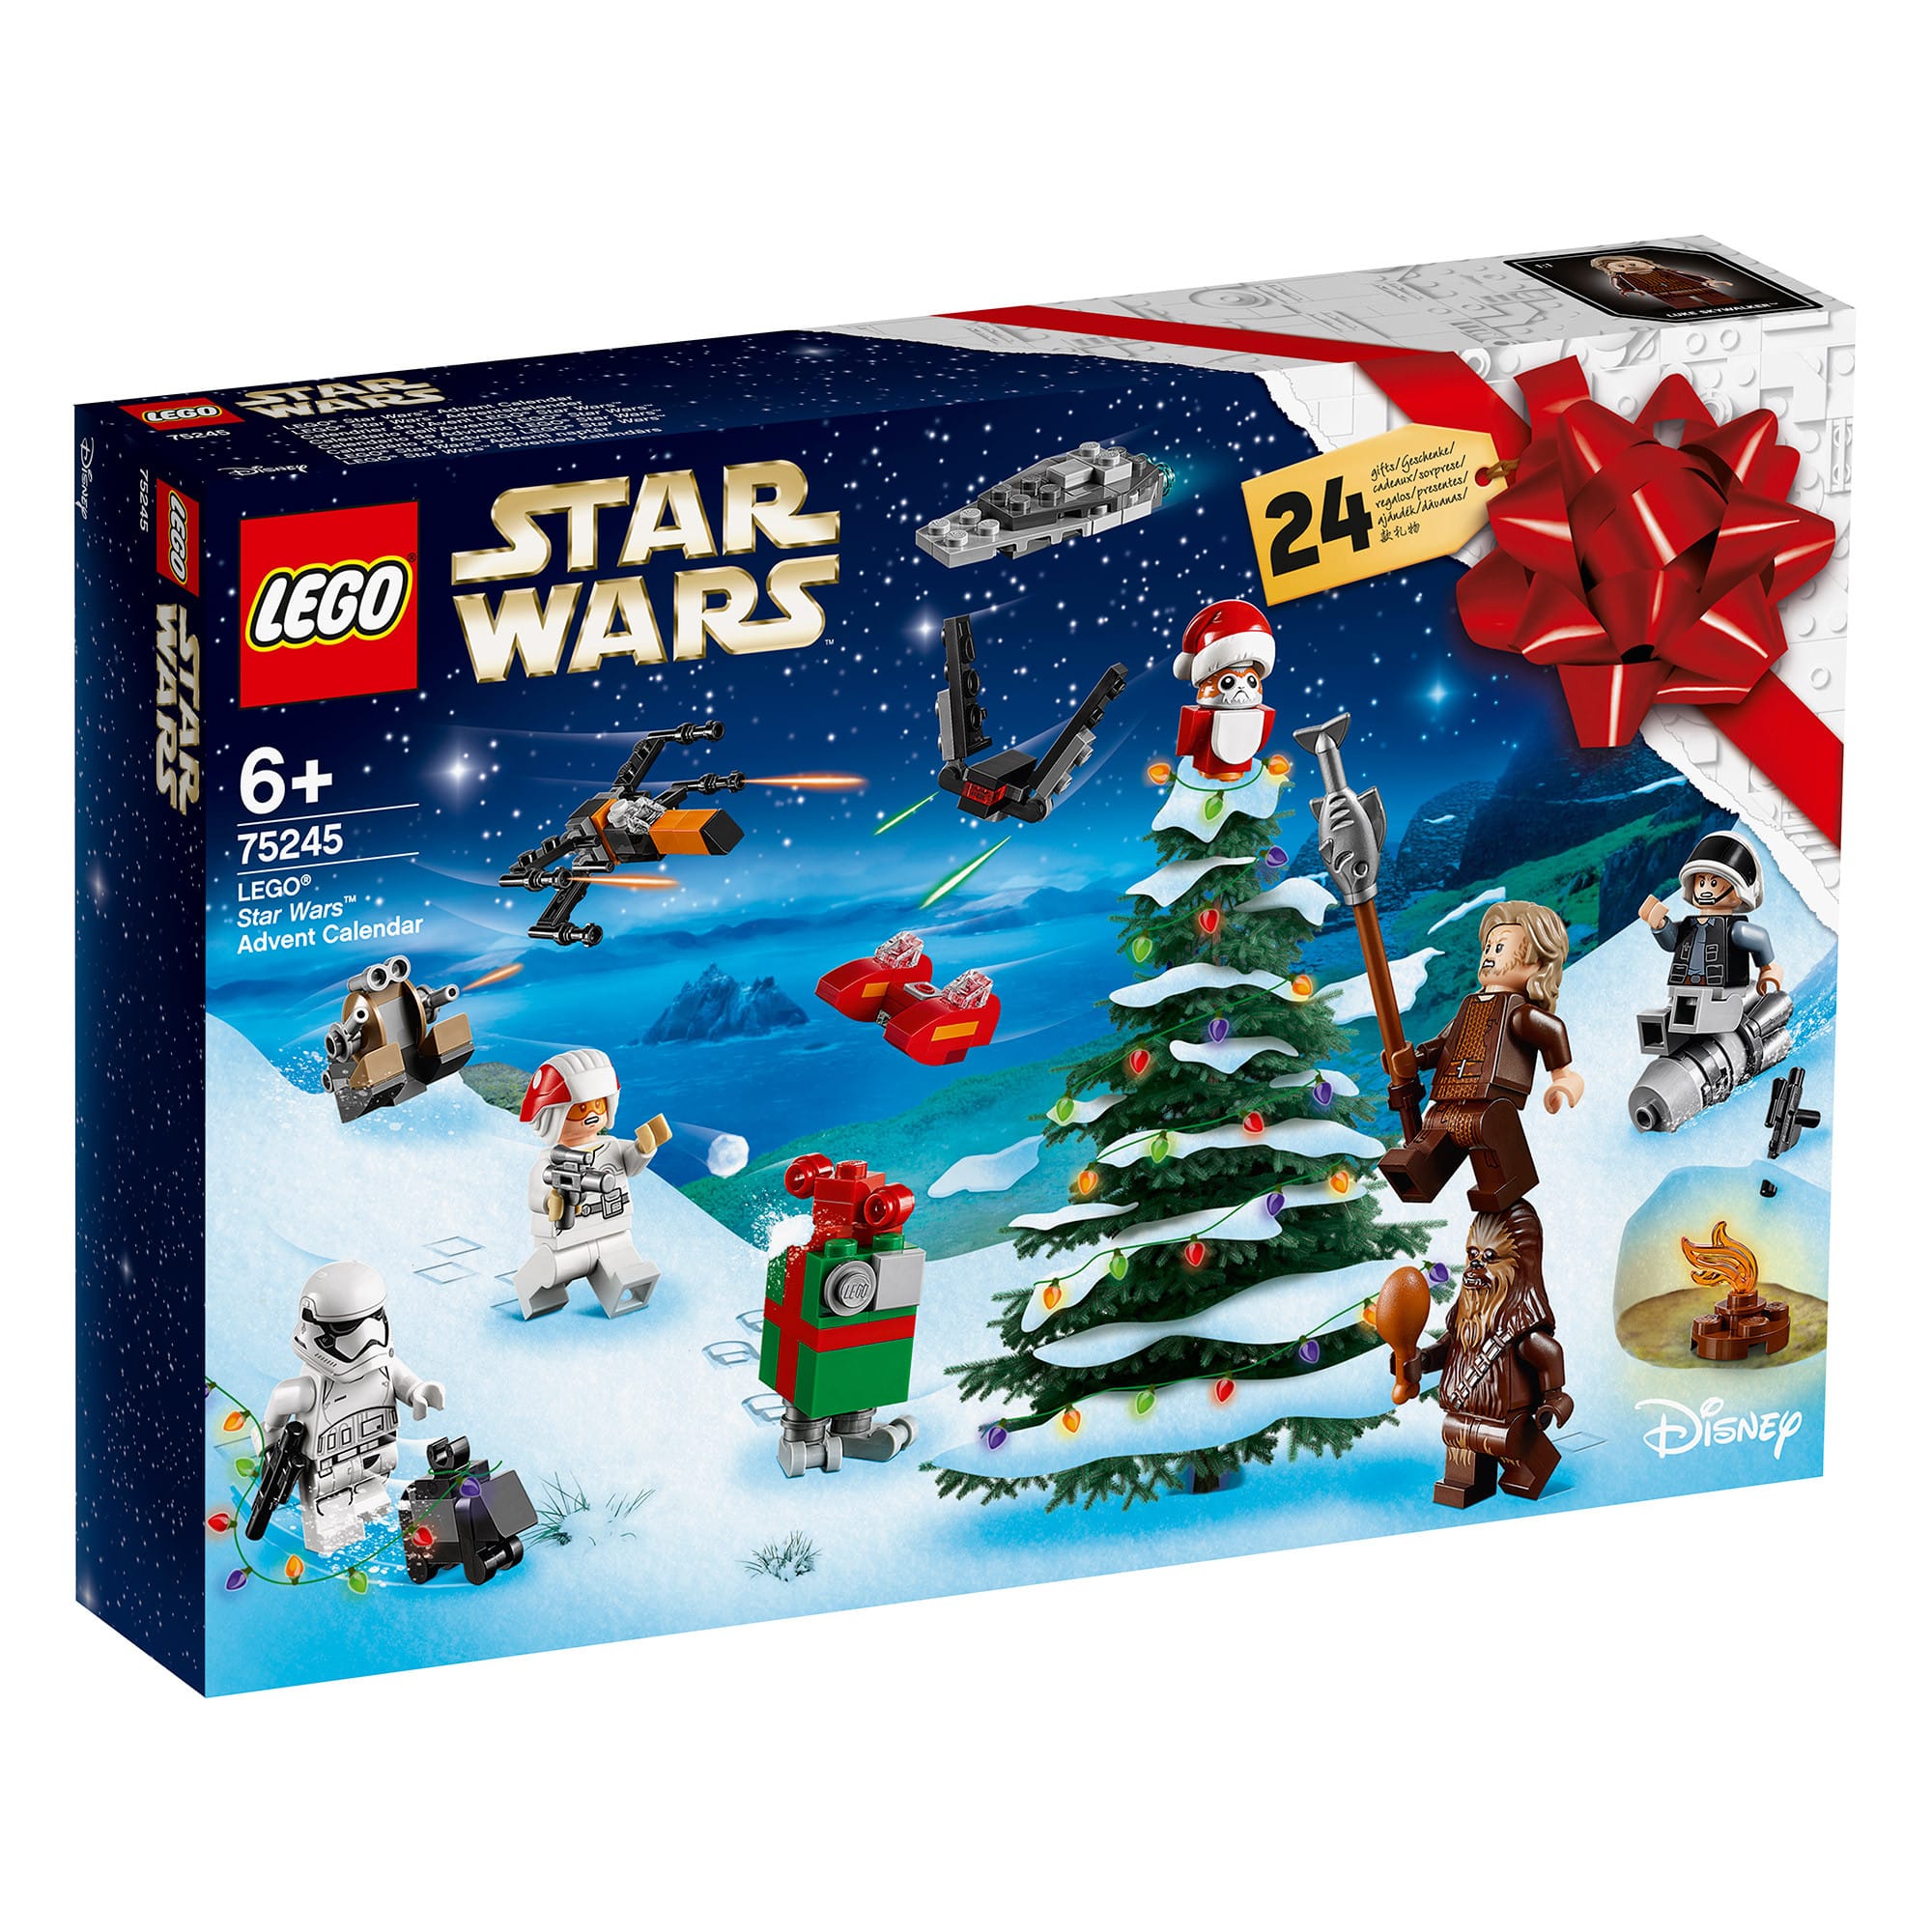 LEGO Star Wars 75245 - Advent Calendar